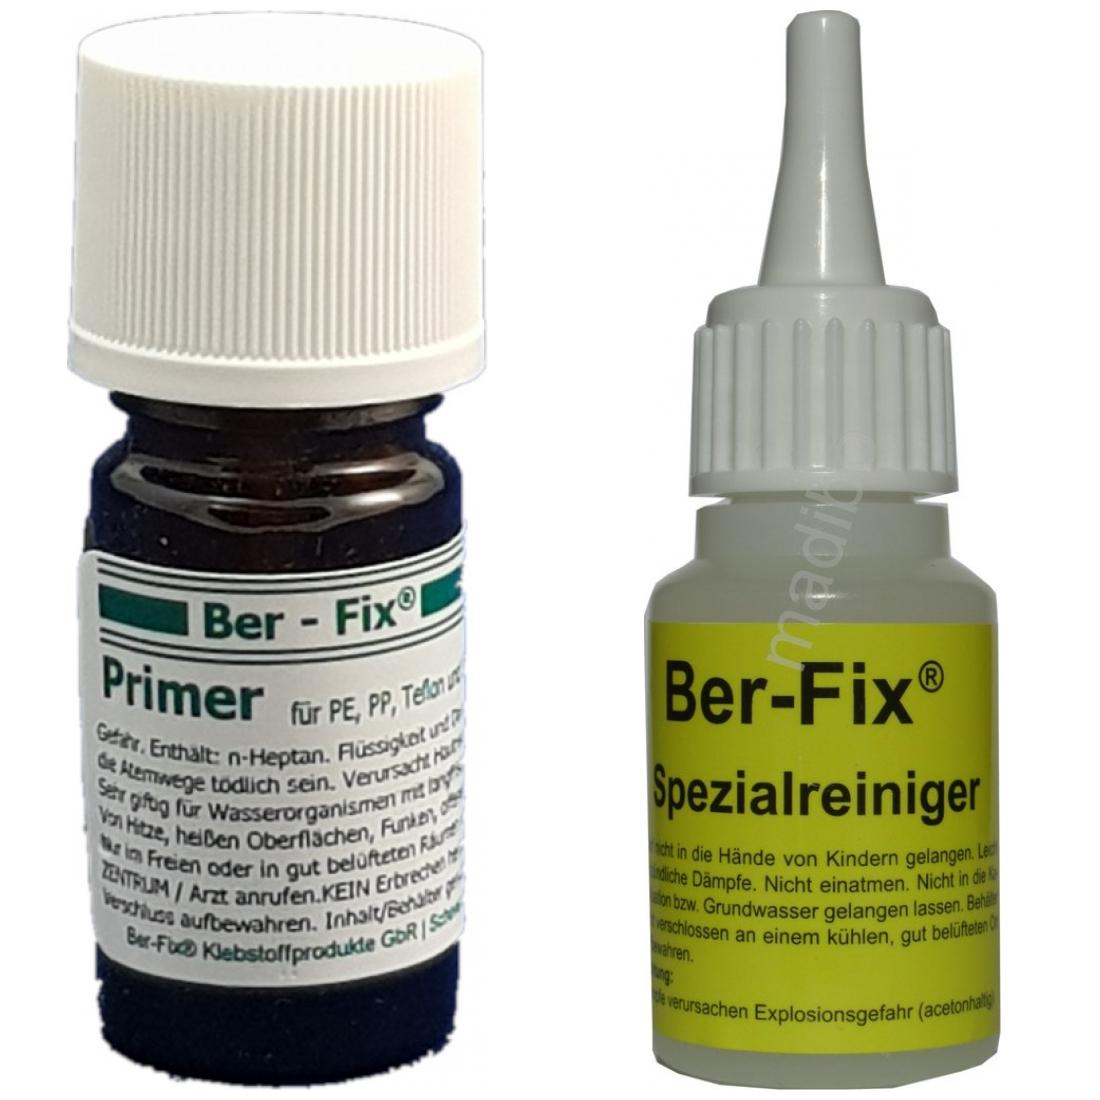 Ber-Fix Primer - Inhalt: 5 ml + Spezialreiniger 20 Gramm